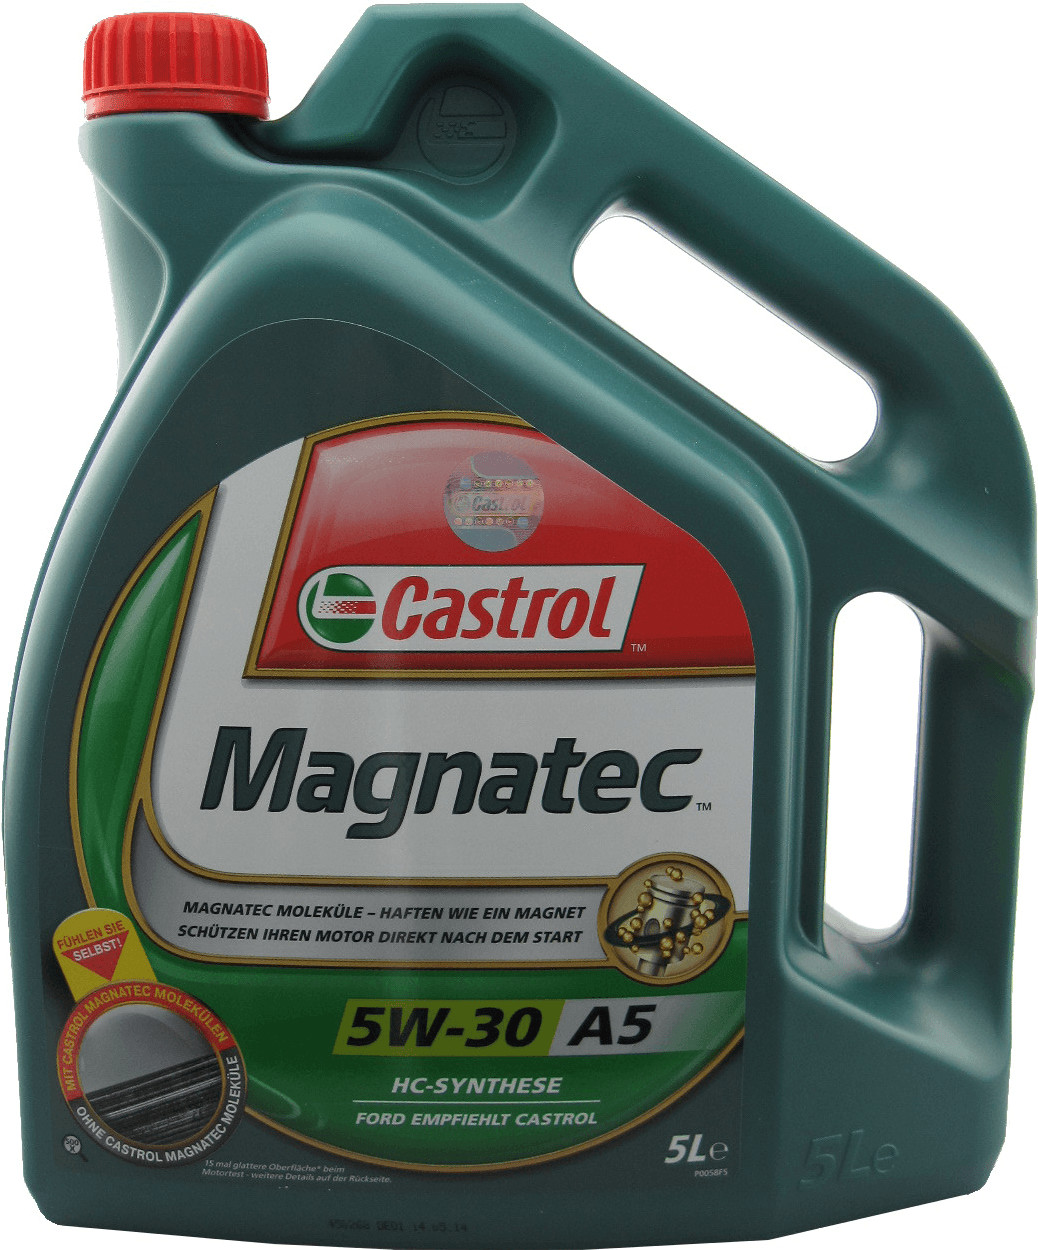 Castrol Magnatec 5W-30 A5 ab 38,50 €